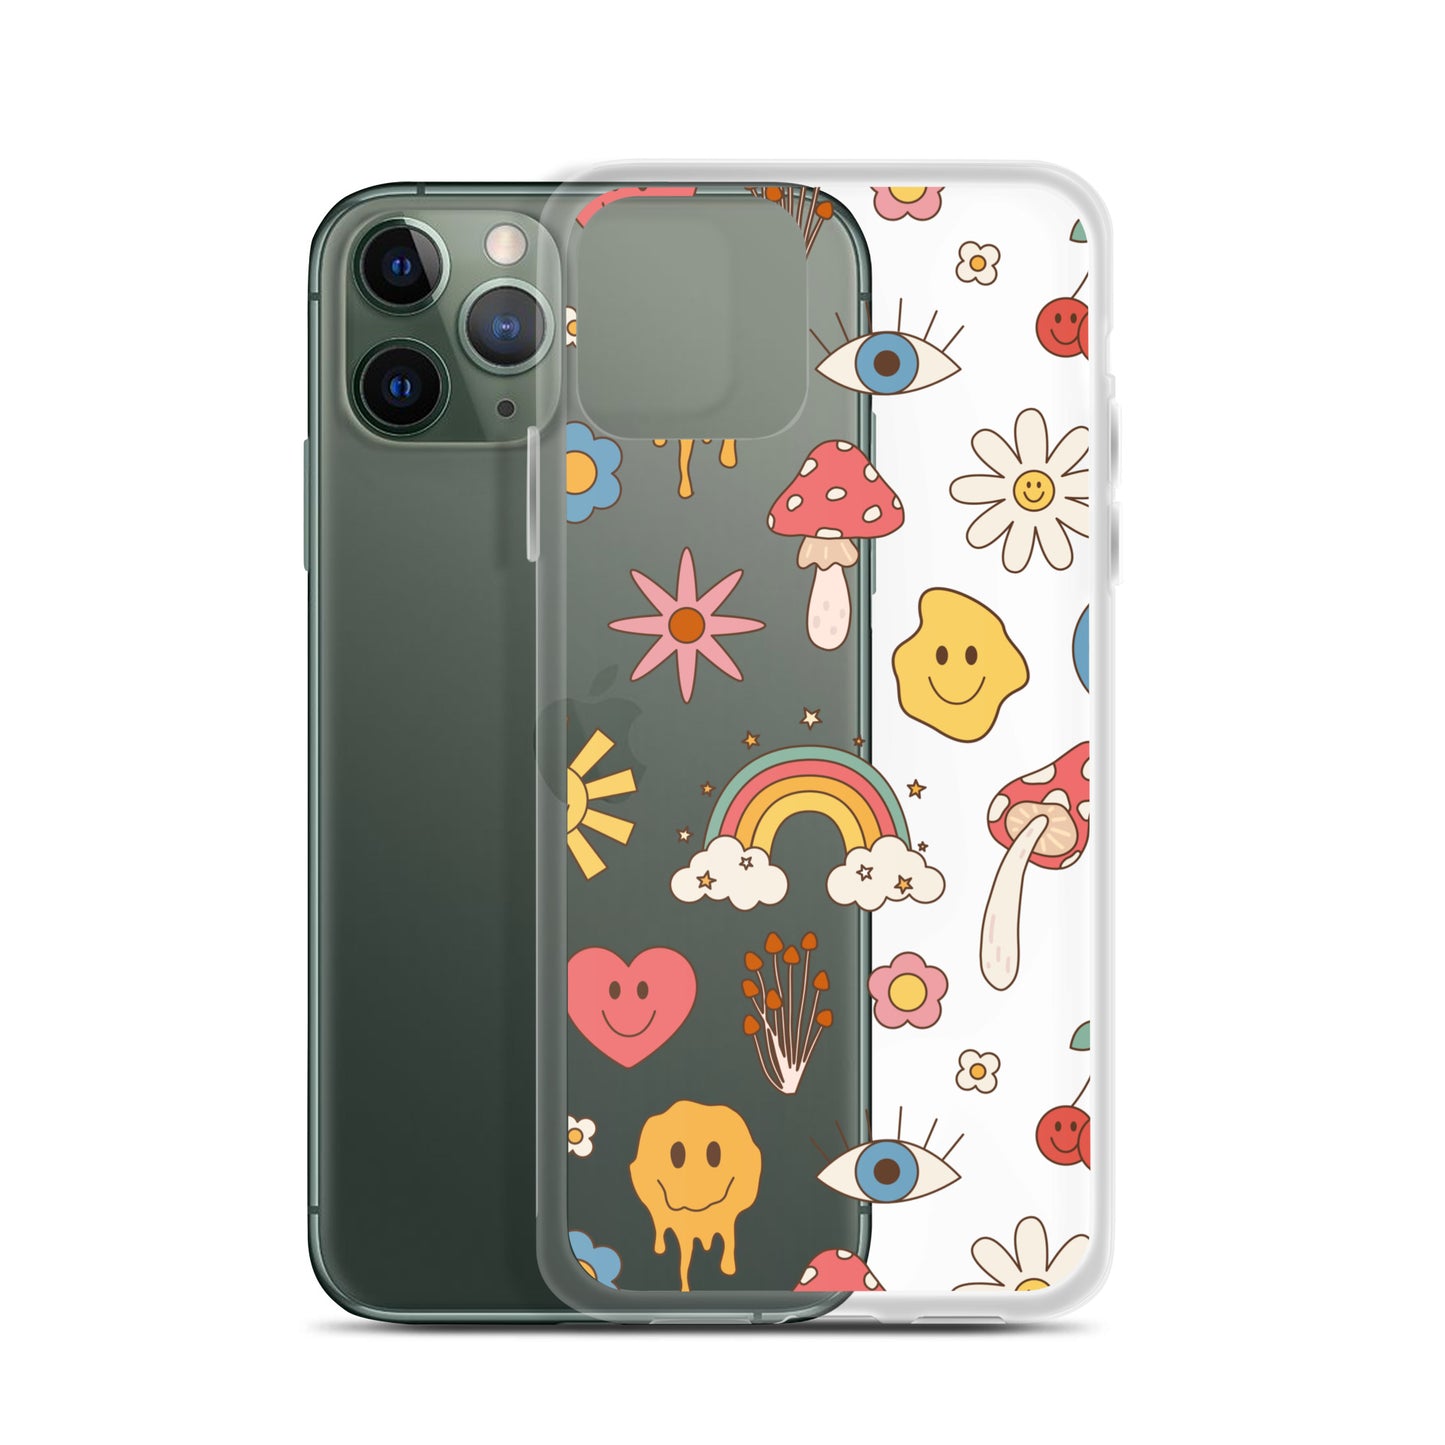 Wonderland Clear iPhone Case